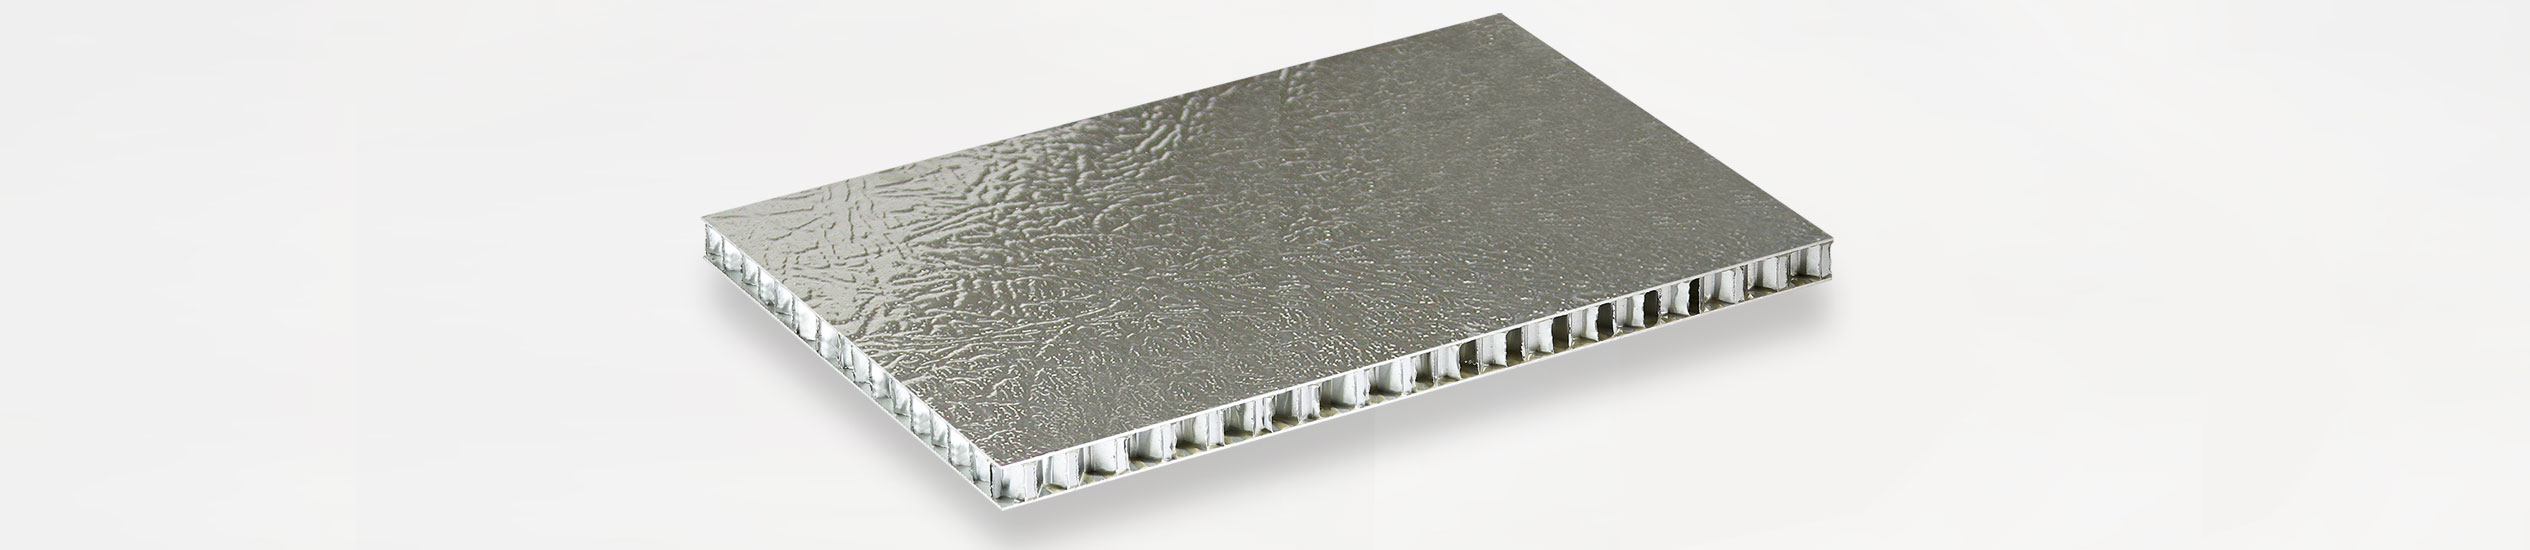 Cel liefert Sandwichplatten mit Wabenkern aus Aluminium für Fassaden, Innenräume, Werften  COMPOCEL-INOX